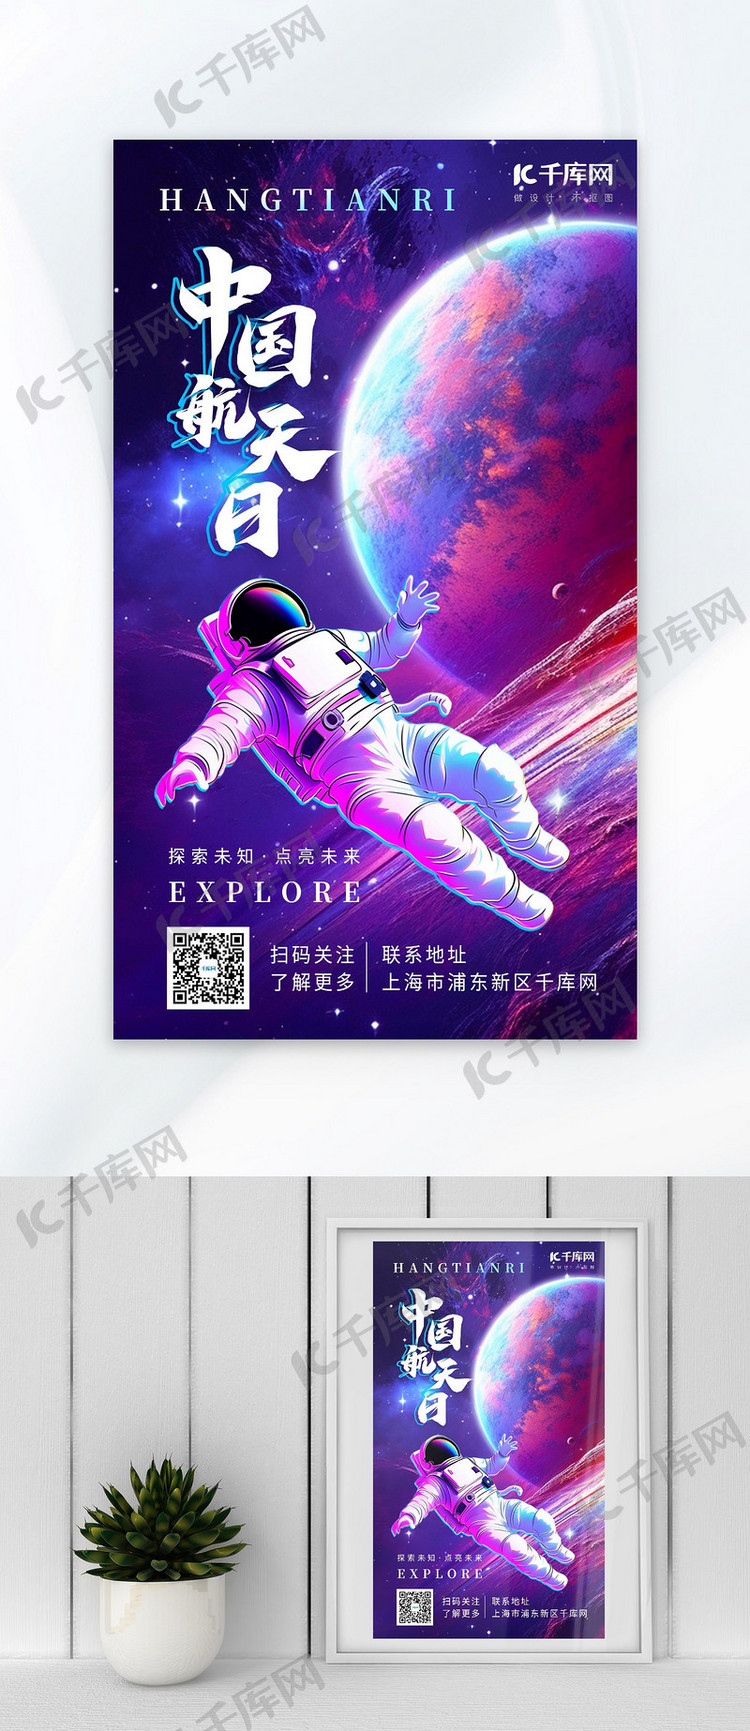 中国航天日星球宇航员太空紫红色AIGC广告宣传海报